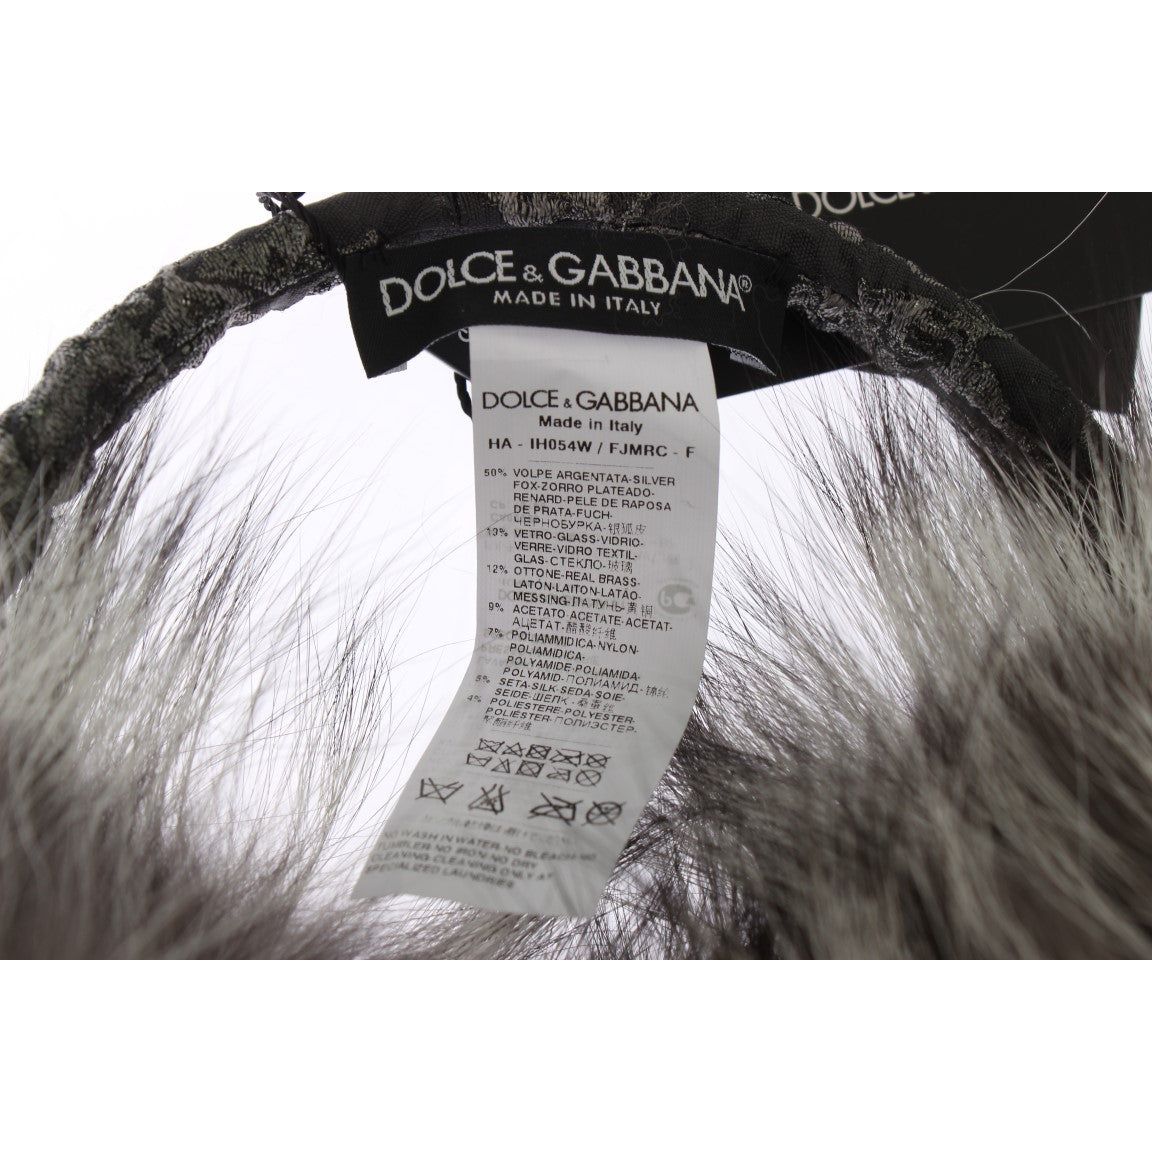 Dolce & Gabbana Elegant Fur and Crystal Ear Muffs gray-fox-fur-crystal-ear-muffs Ear Muffs 302523-gray-fox-fur-crystal-ear-muffs-6.jpg